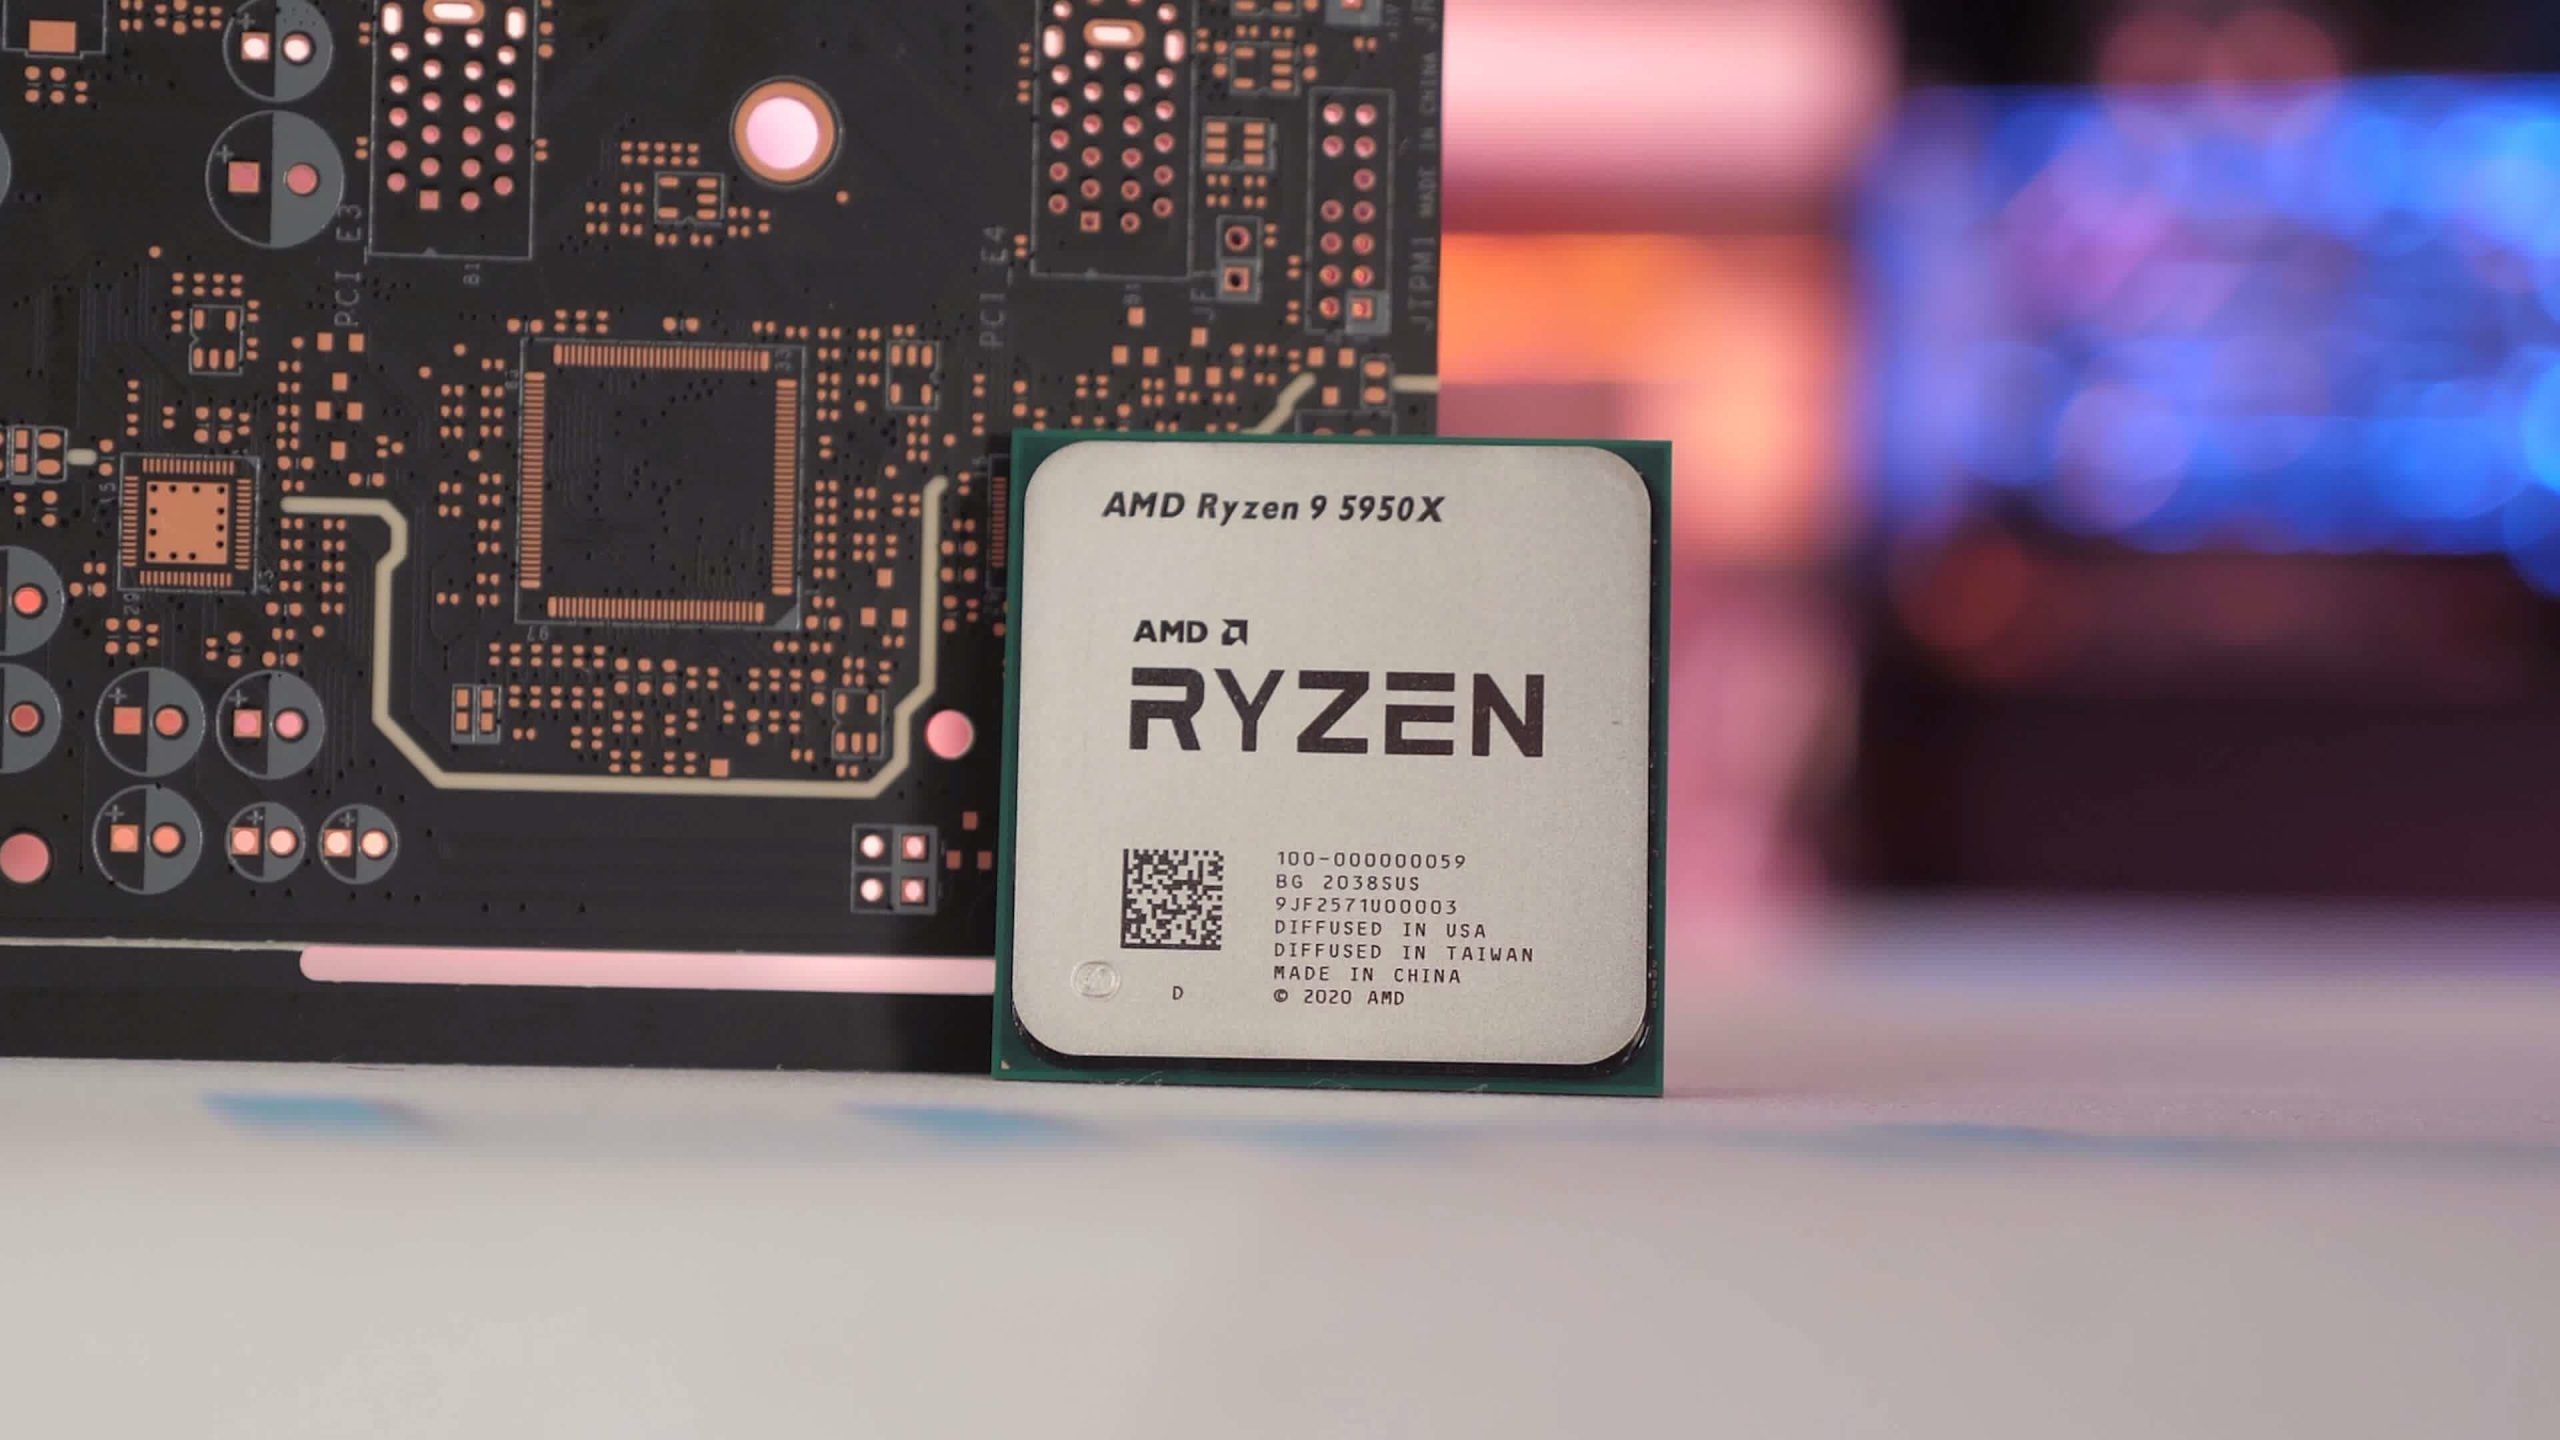 Reseñas, ventajas y desventajas de AMD Ryzen 9 5950X